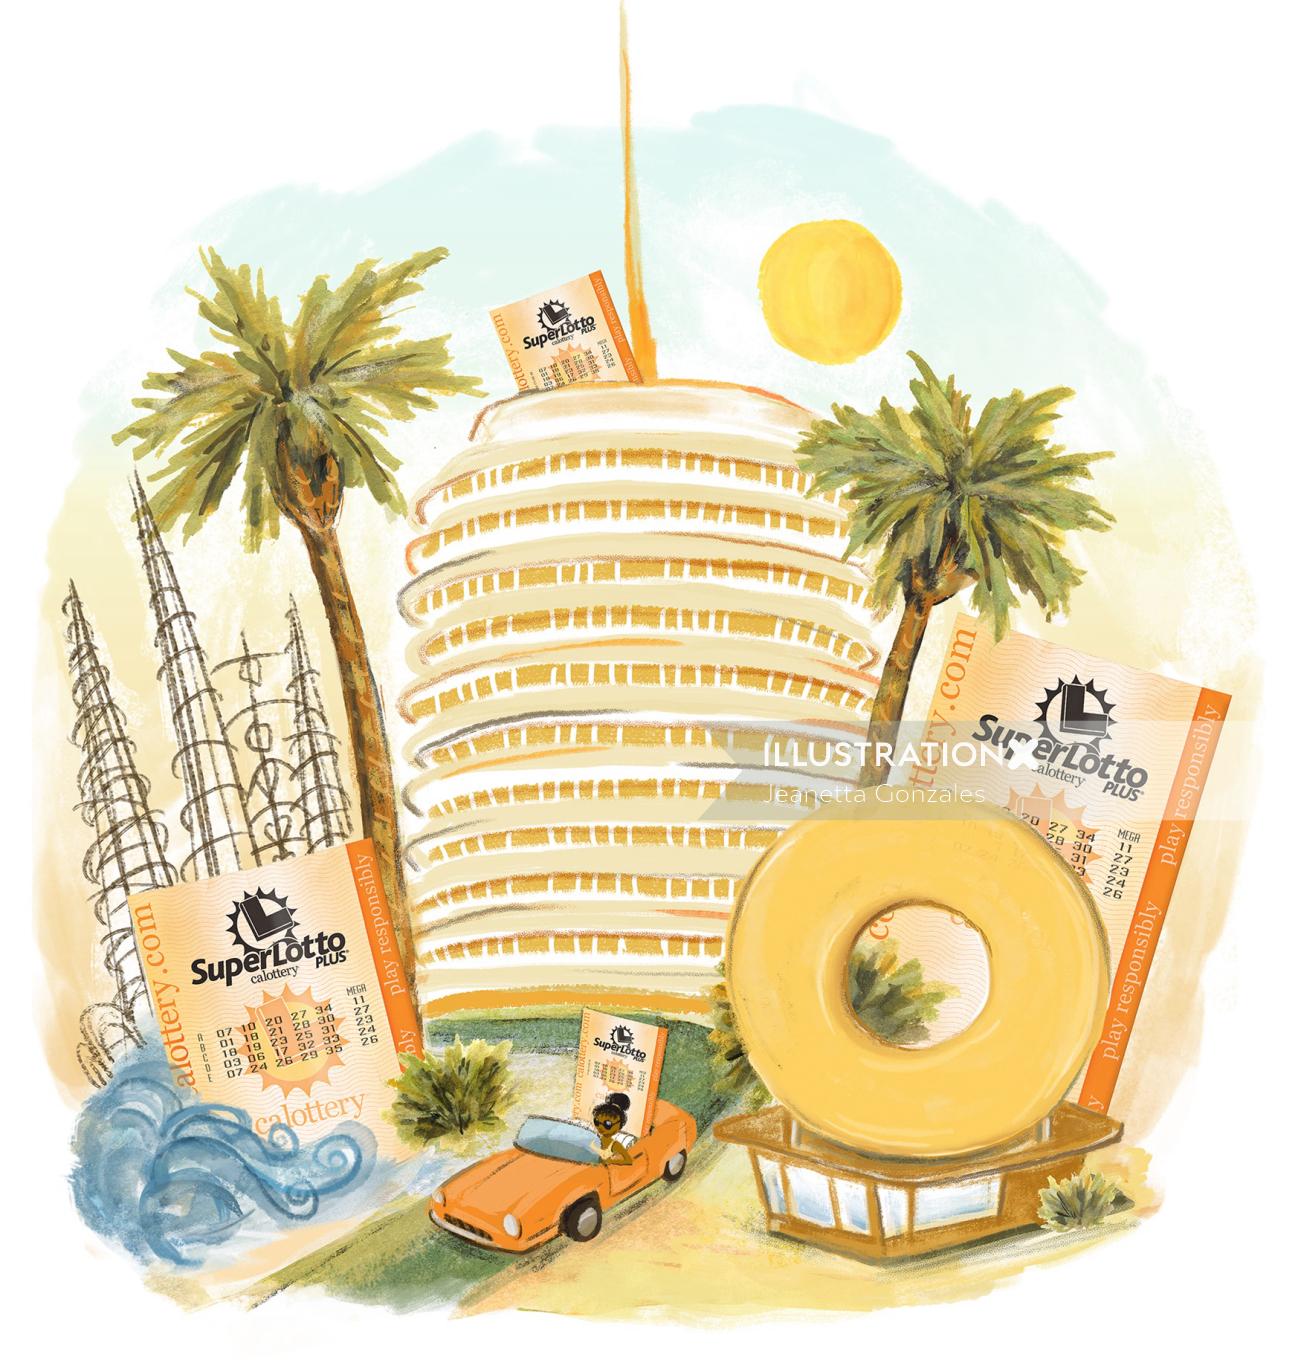 Illustration de célébration de la loterie de Californie par Jeanetta Gonzales